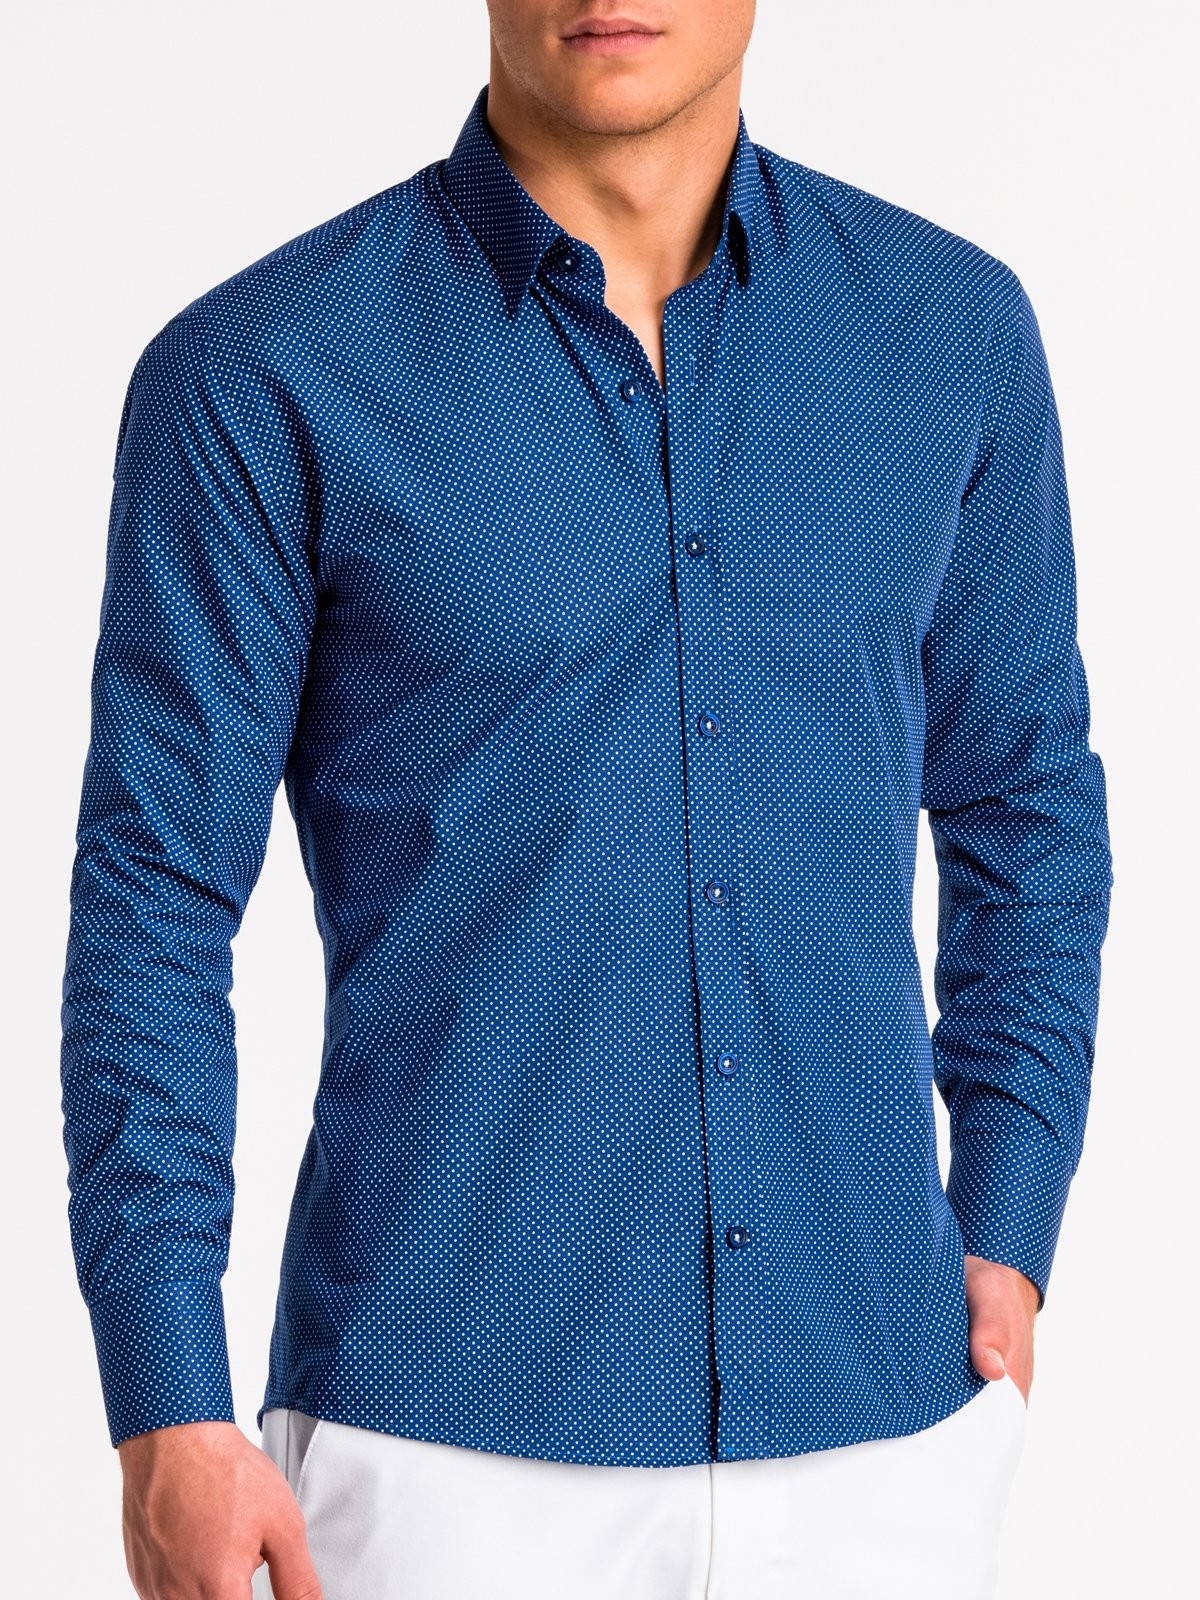 Купить синюю рубашку мужскую. Рубашка мужская. Синяя рубашка. Светло синяя рубашка мужская. Сорочка мужская синяя.